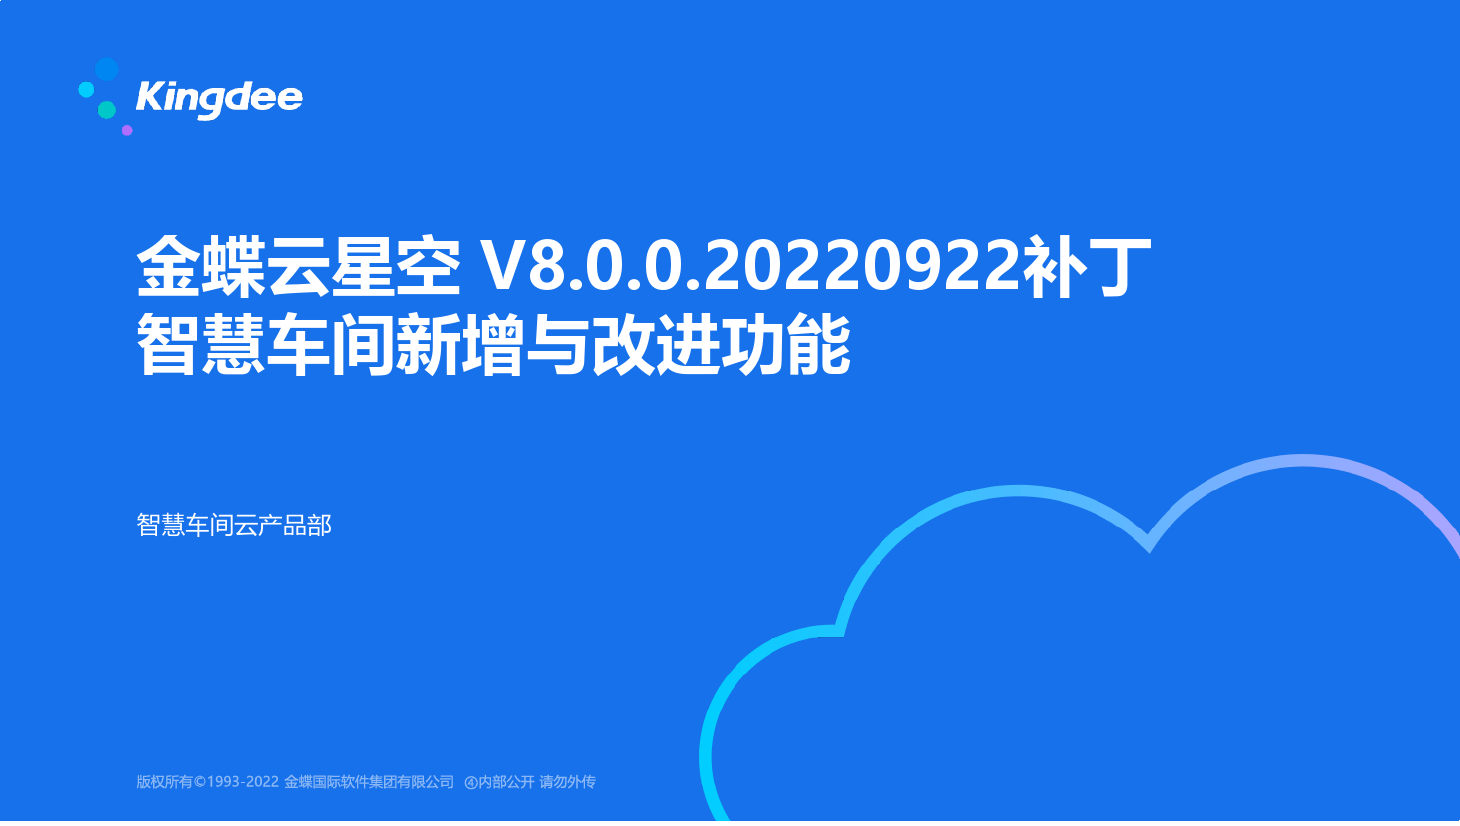 金蝶云社区-金蝶云星空 V8.0.0.20220922补丁智慧车间新增与改进功能